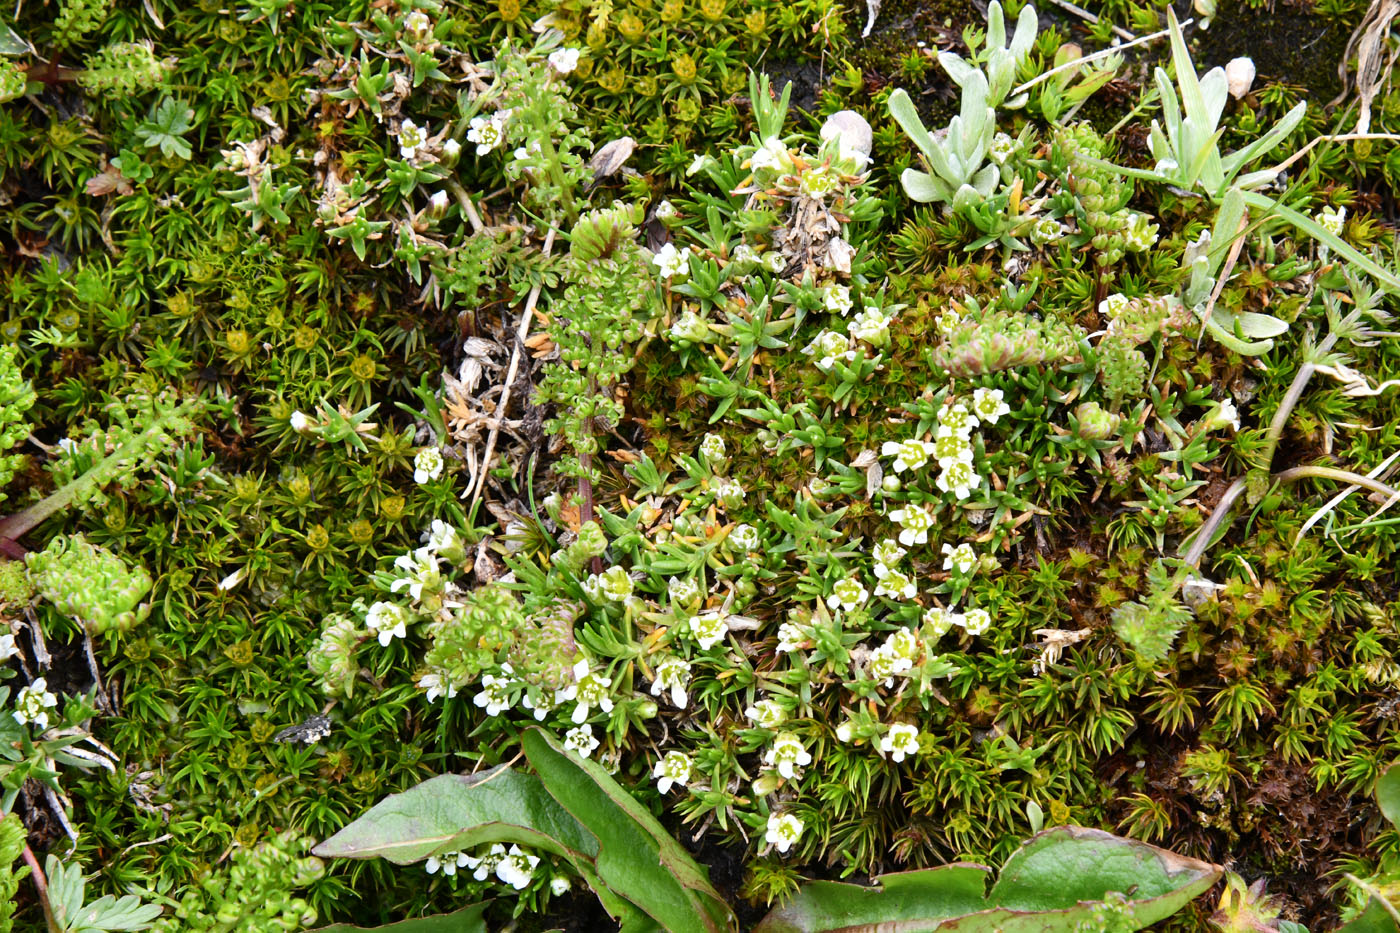 Image of Minuartia biflora specimen.